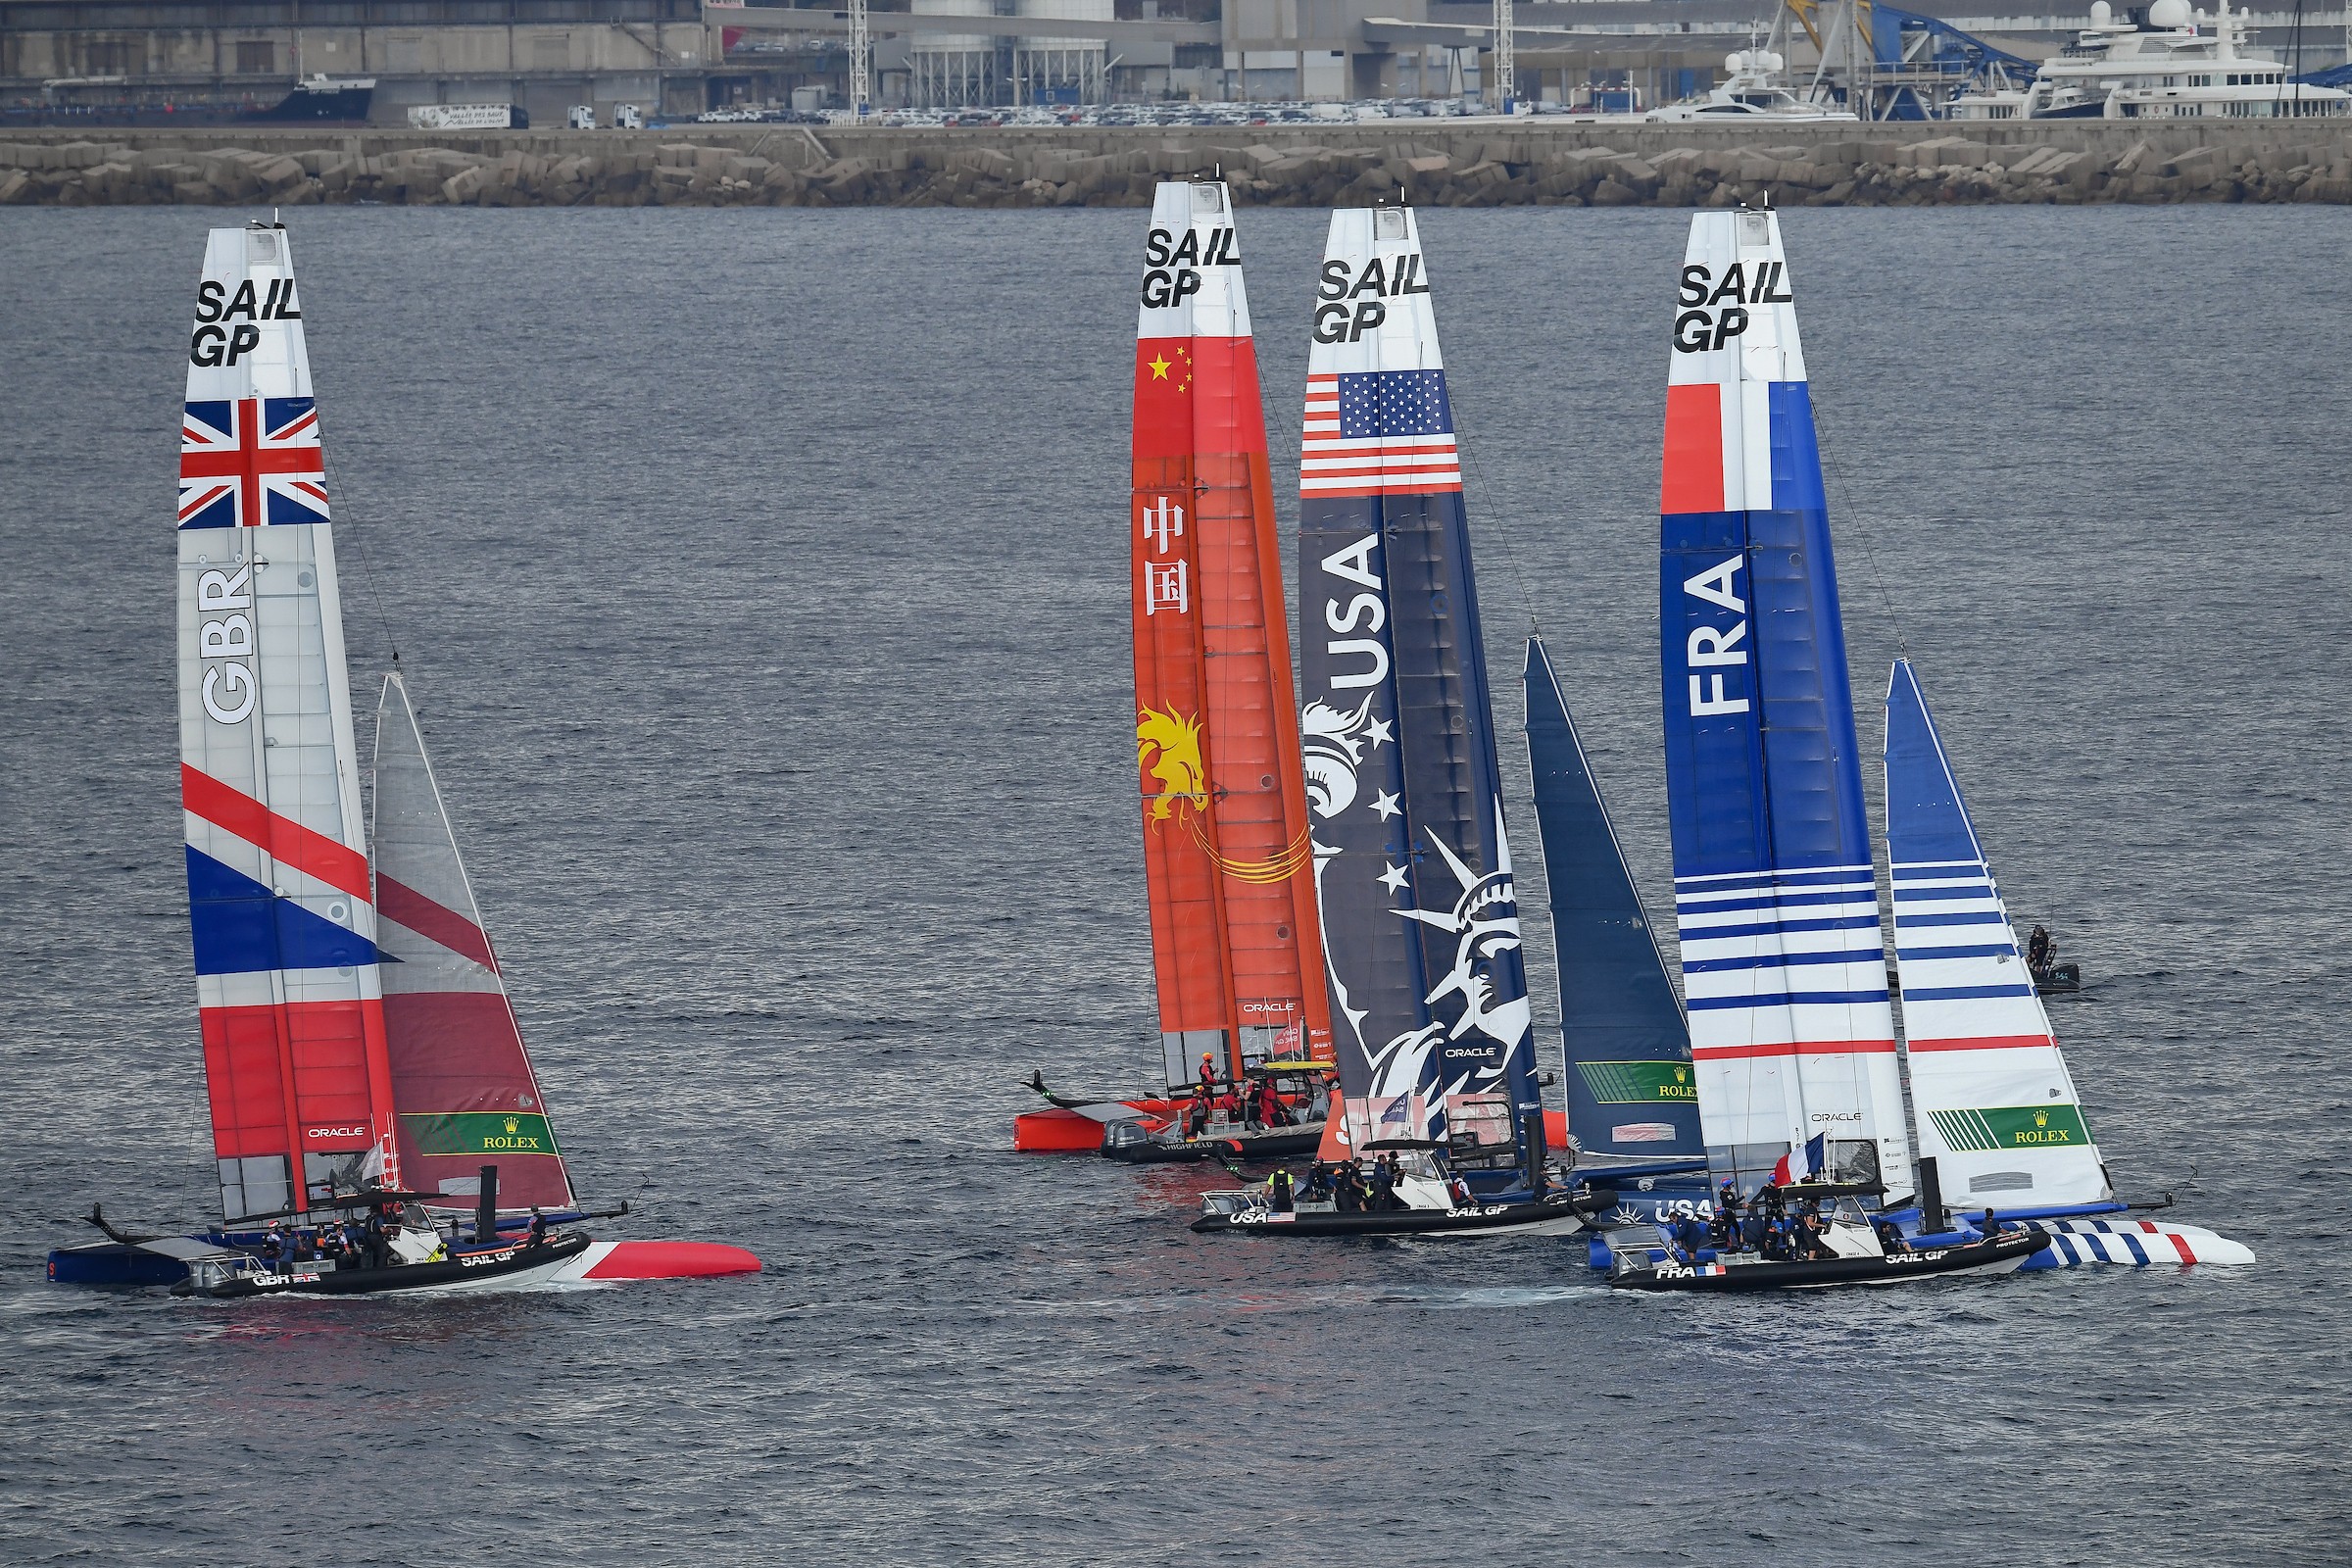 中法英美四支船队进行赛季第三的争夺.JPG